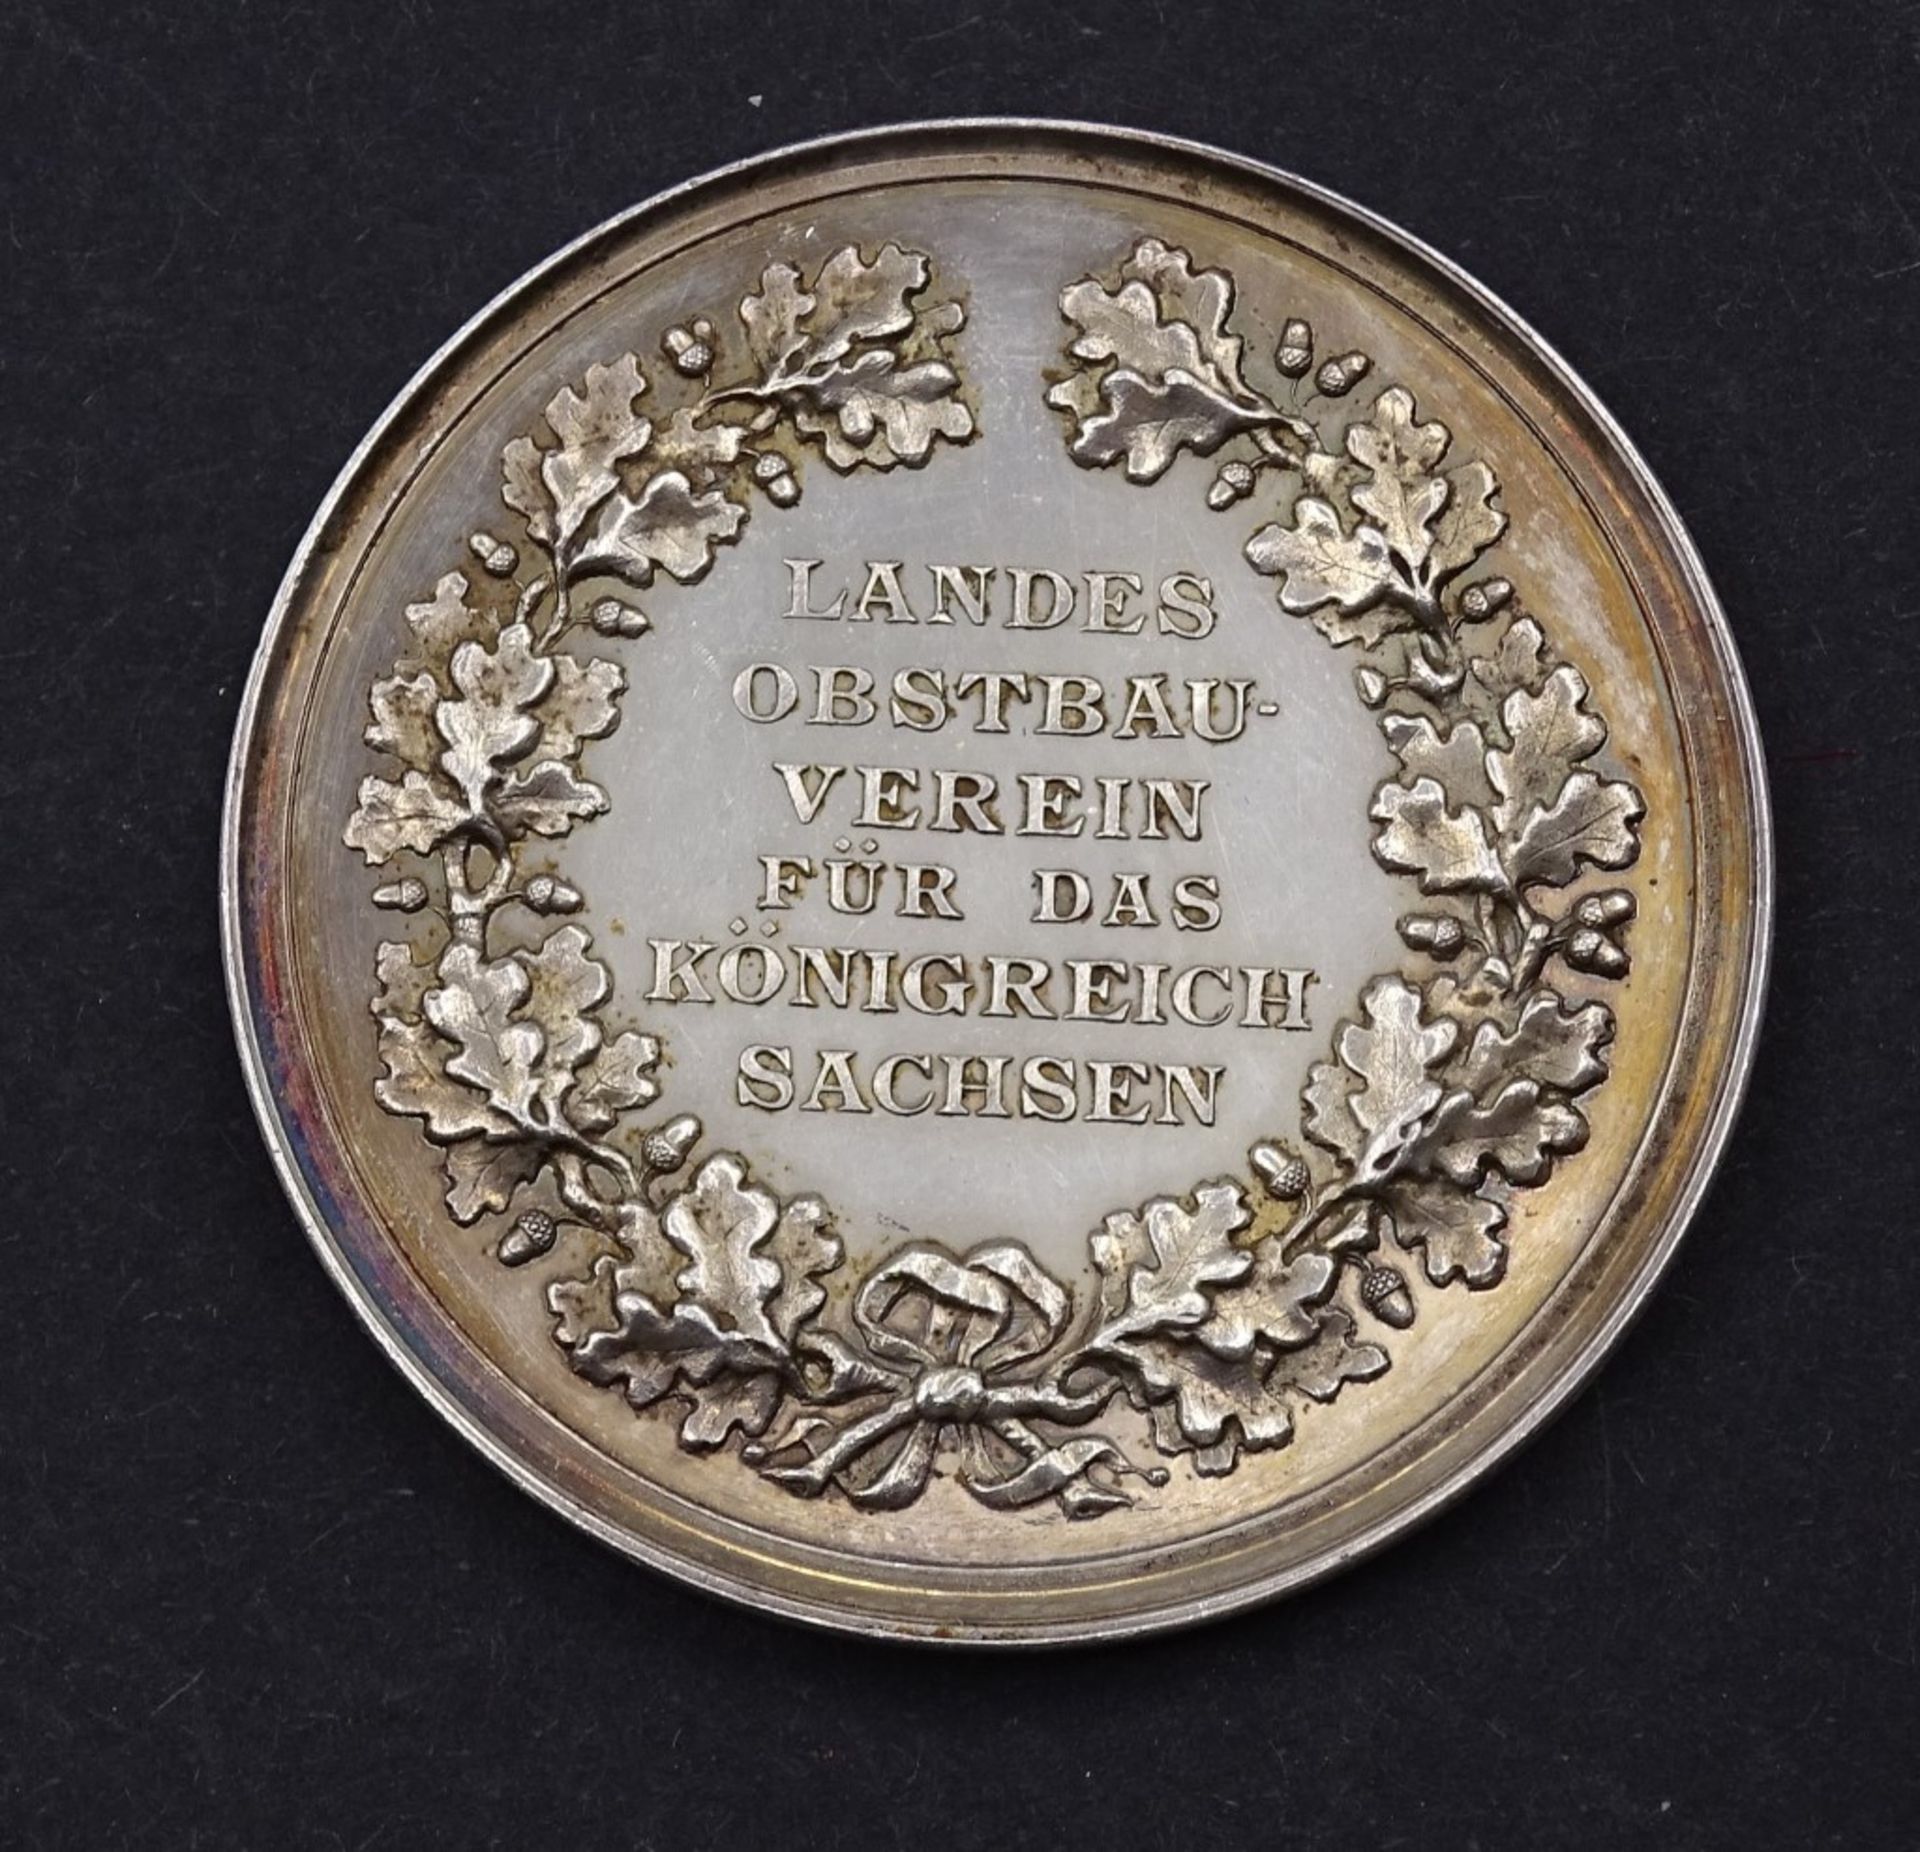 Silber Medaille Landesobst Verein für das Königreich Sachsen,22,7g - Image 2 of 2